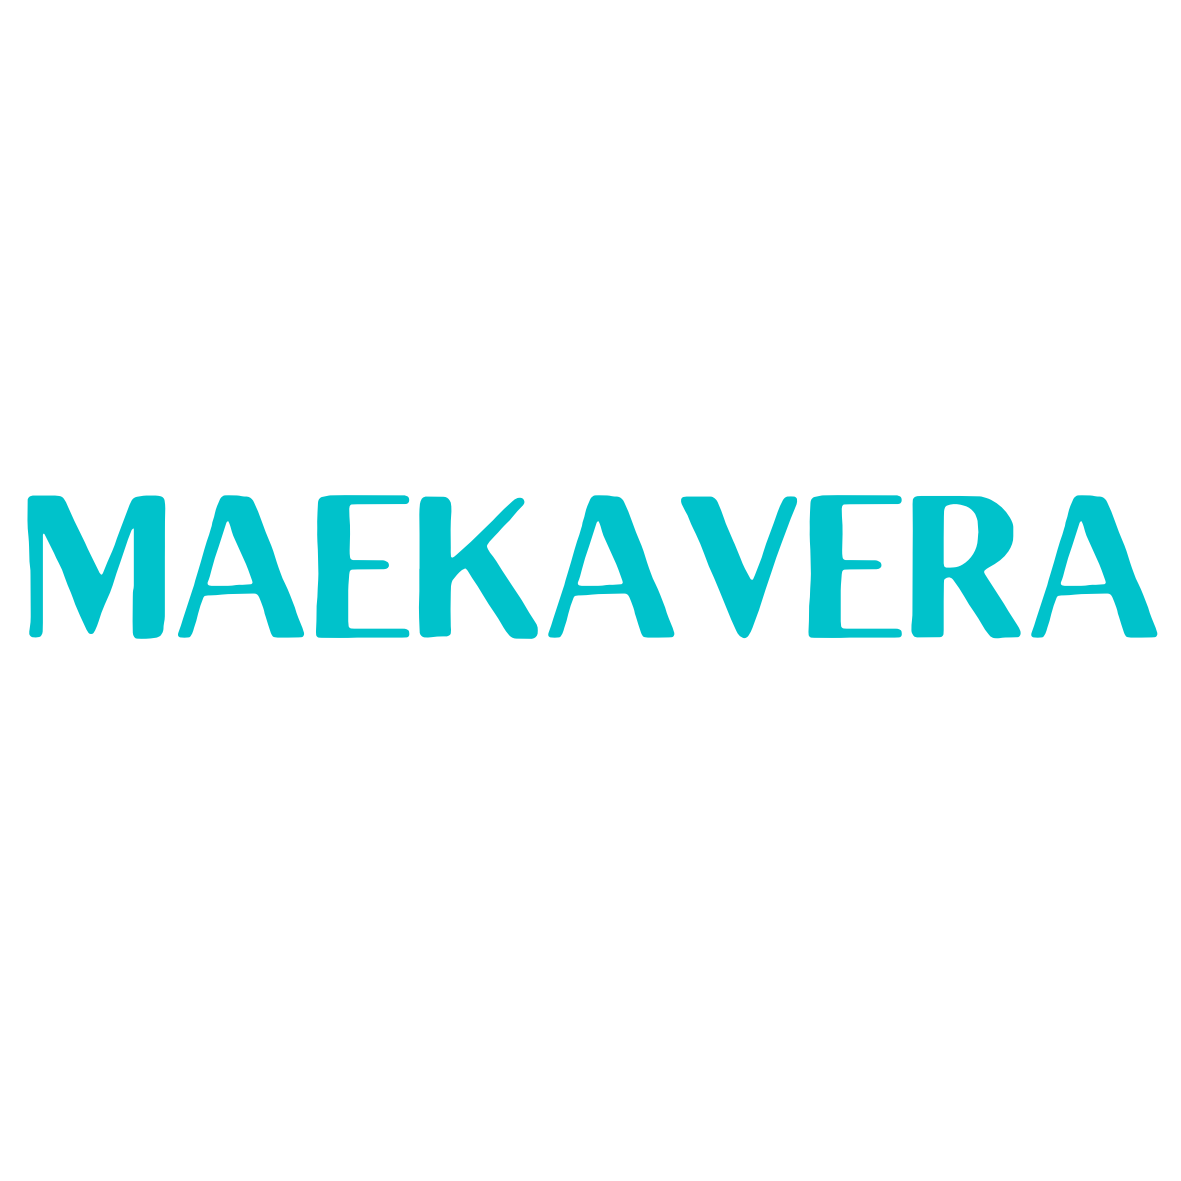 Maekavera